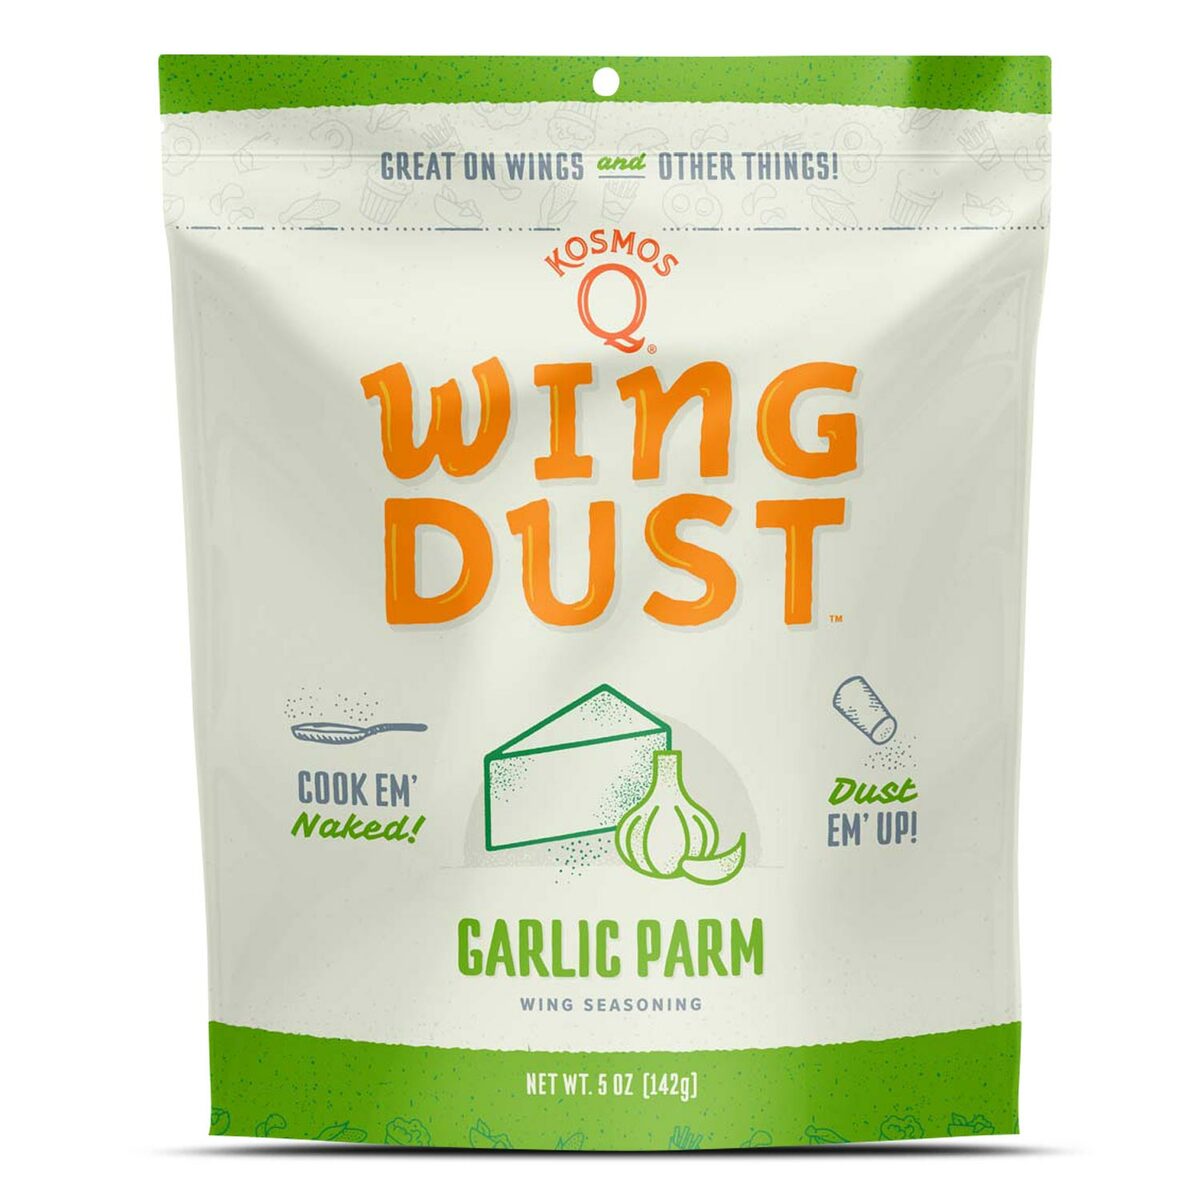 Garlic Parm Wing Seasoning